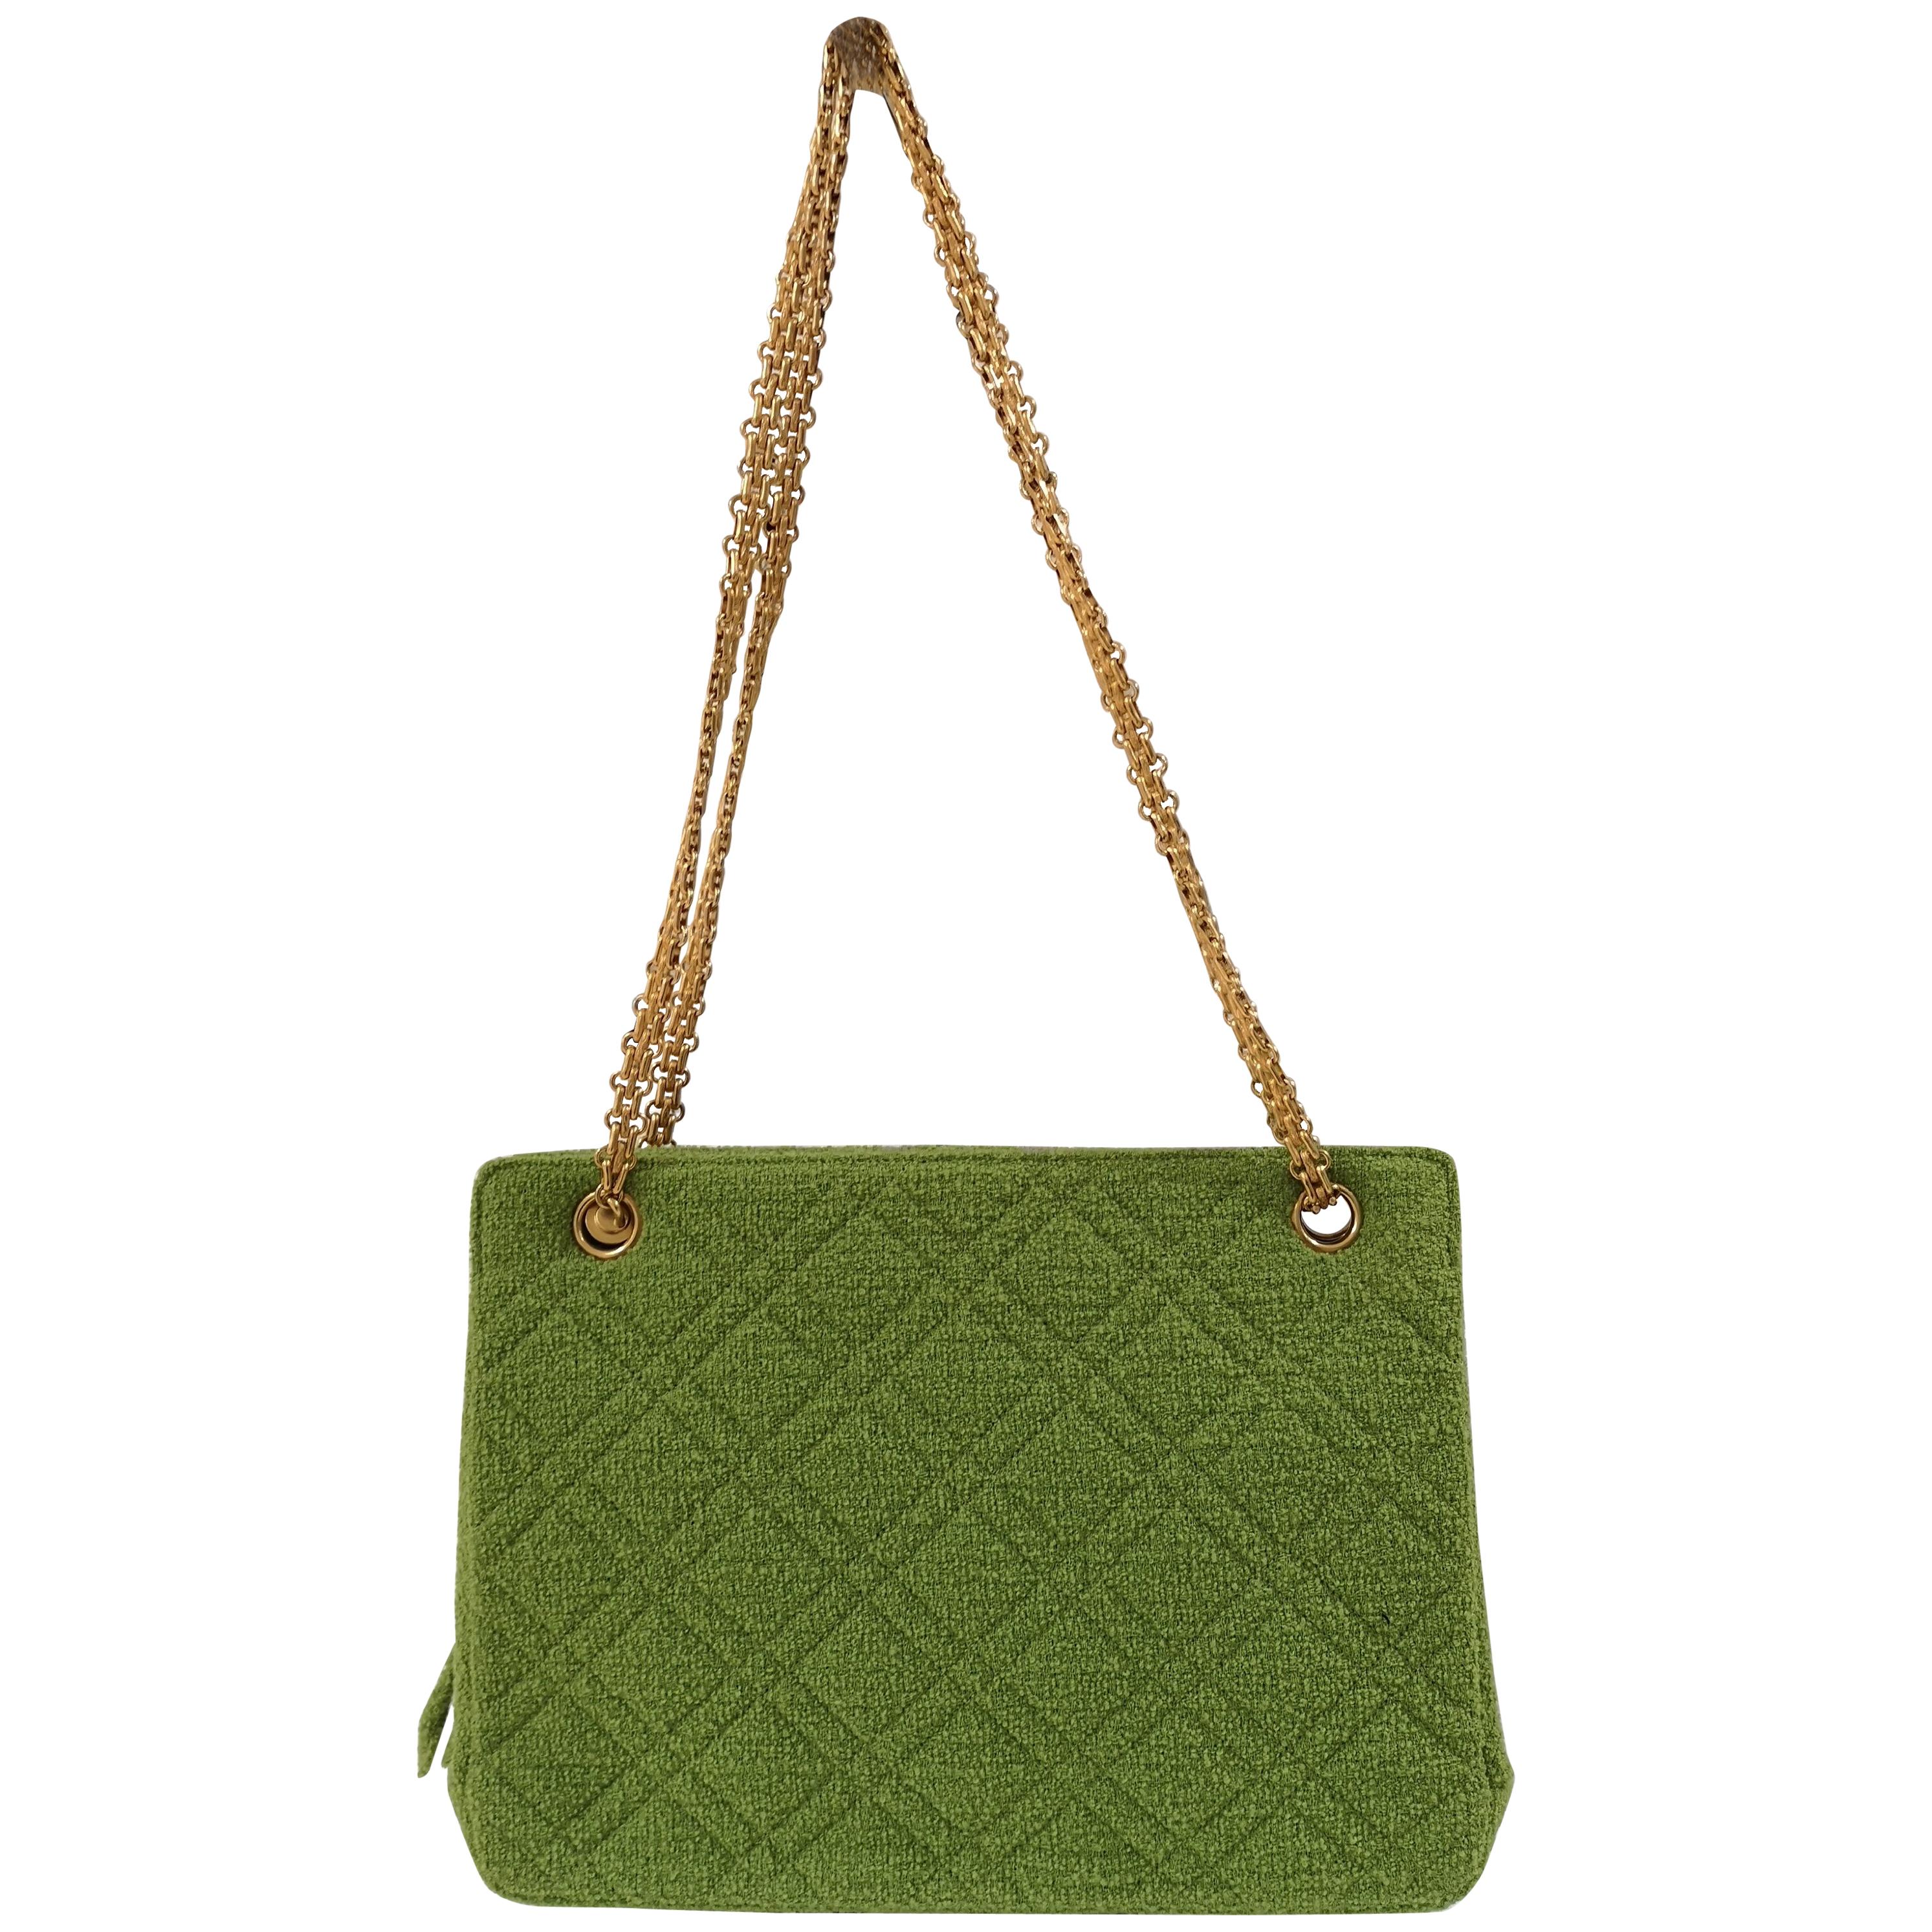 Chanel Vintage Green Bag